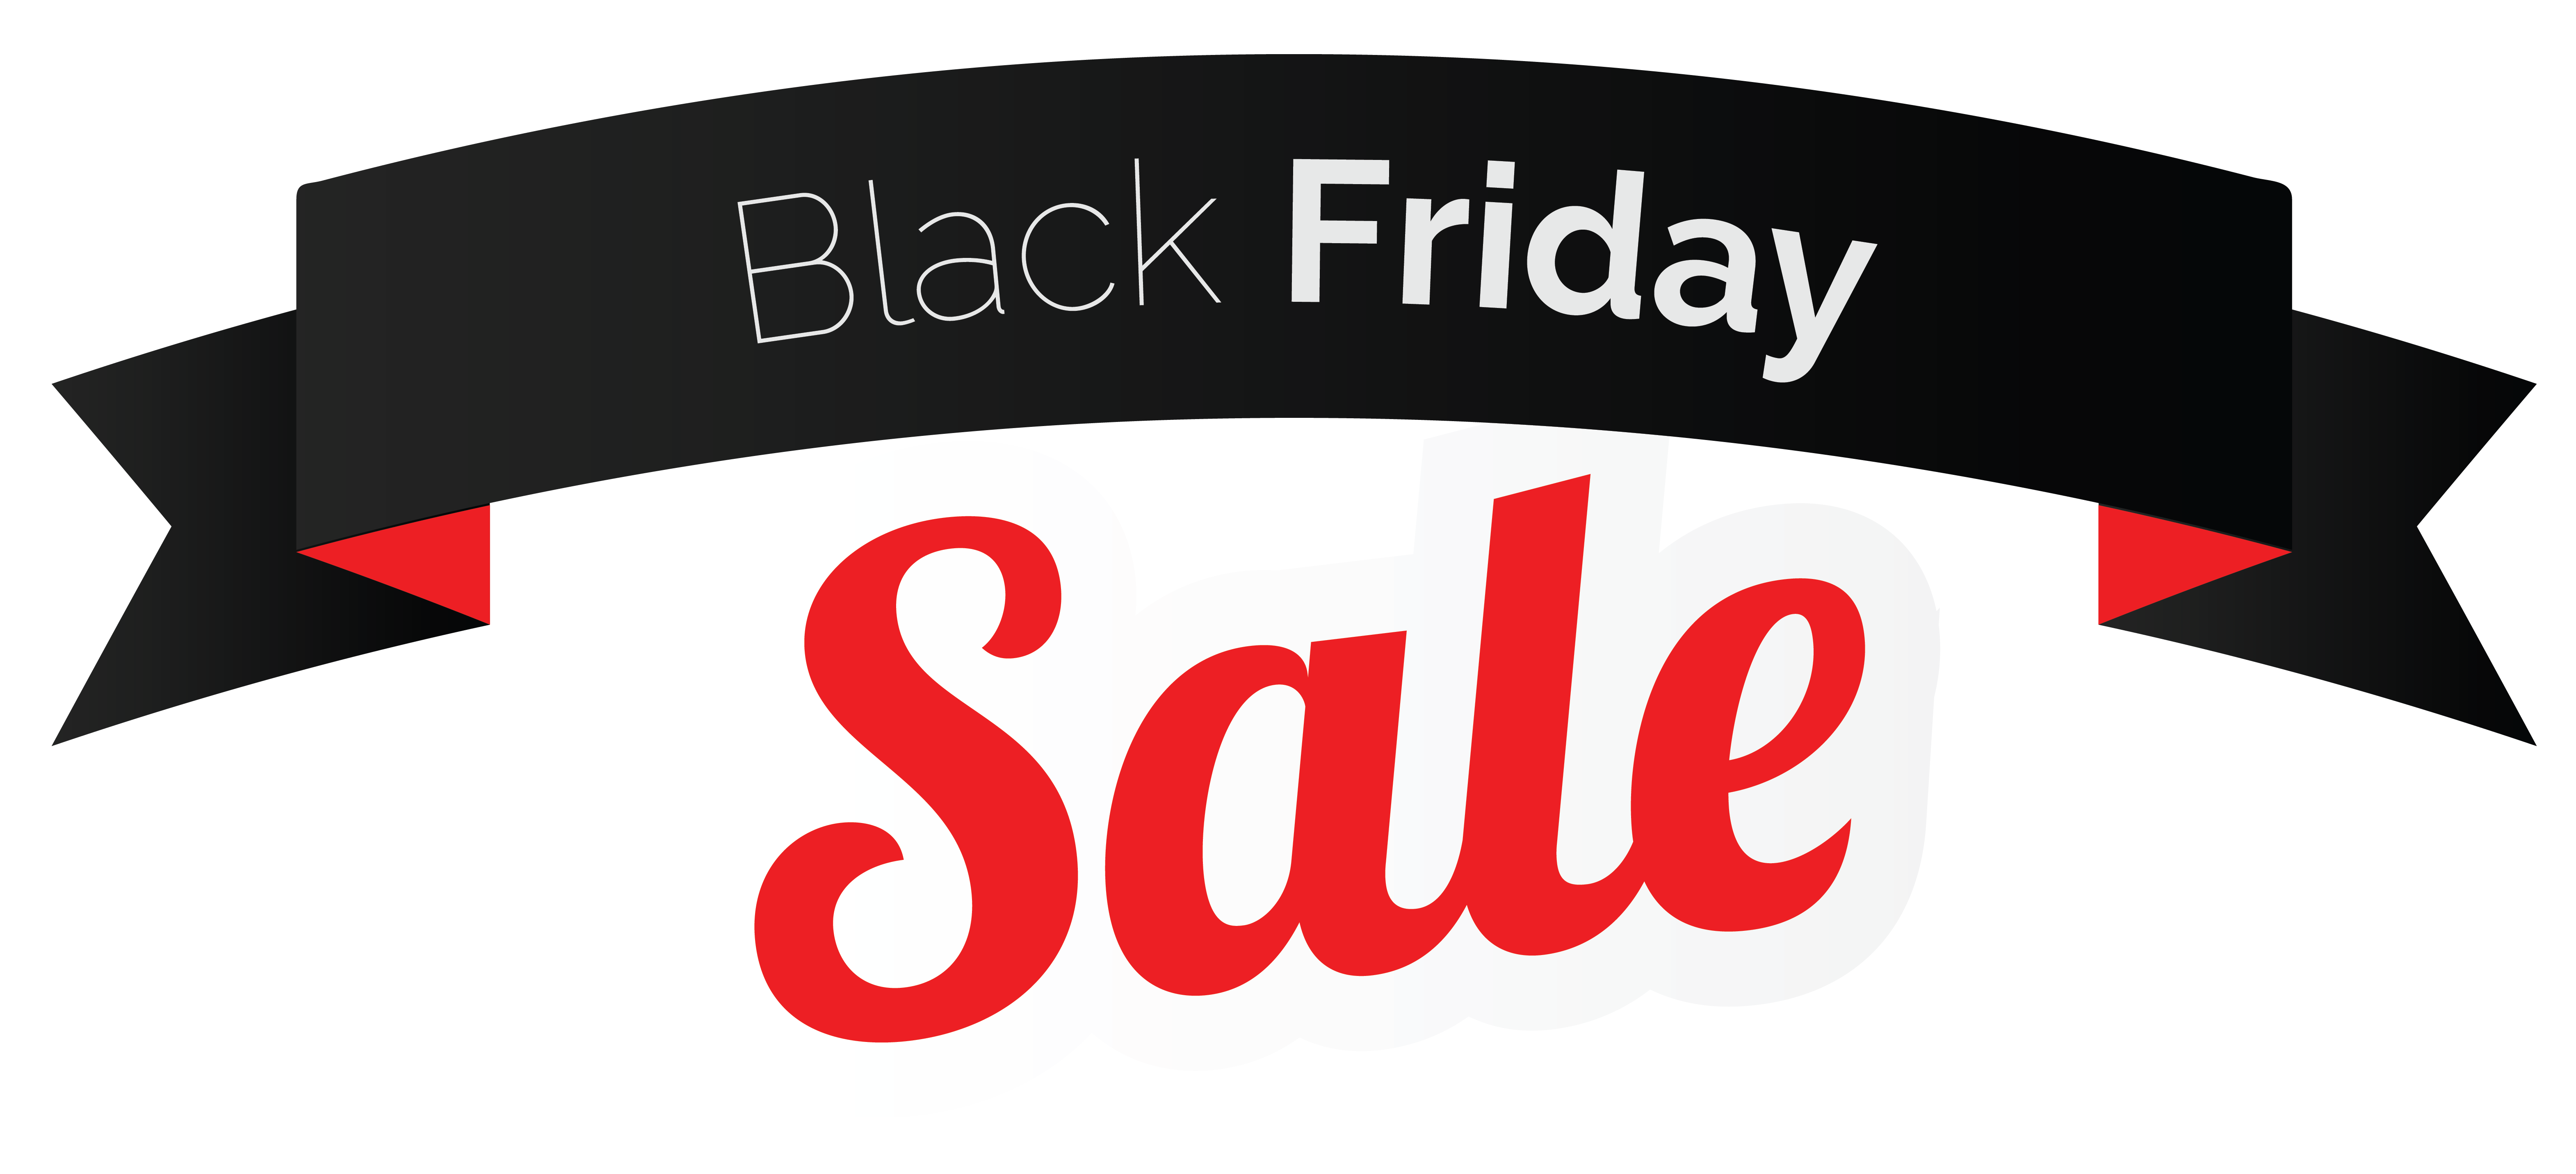 Download PNG image - Black Friday Sale PNG Image 